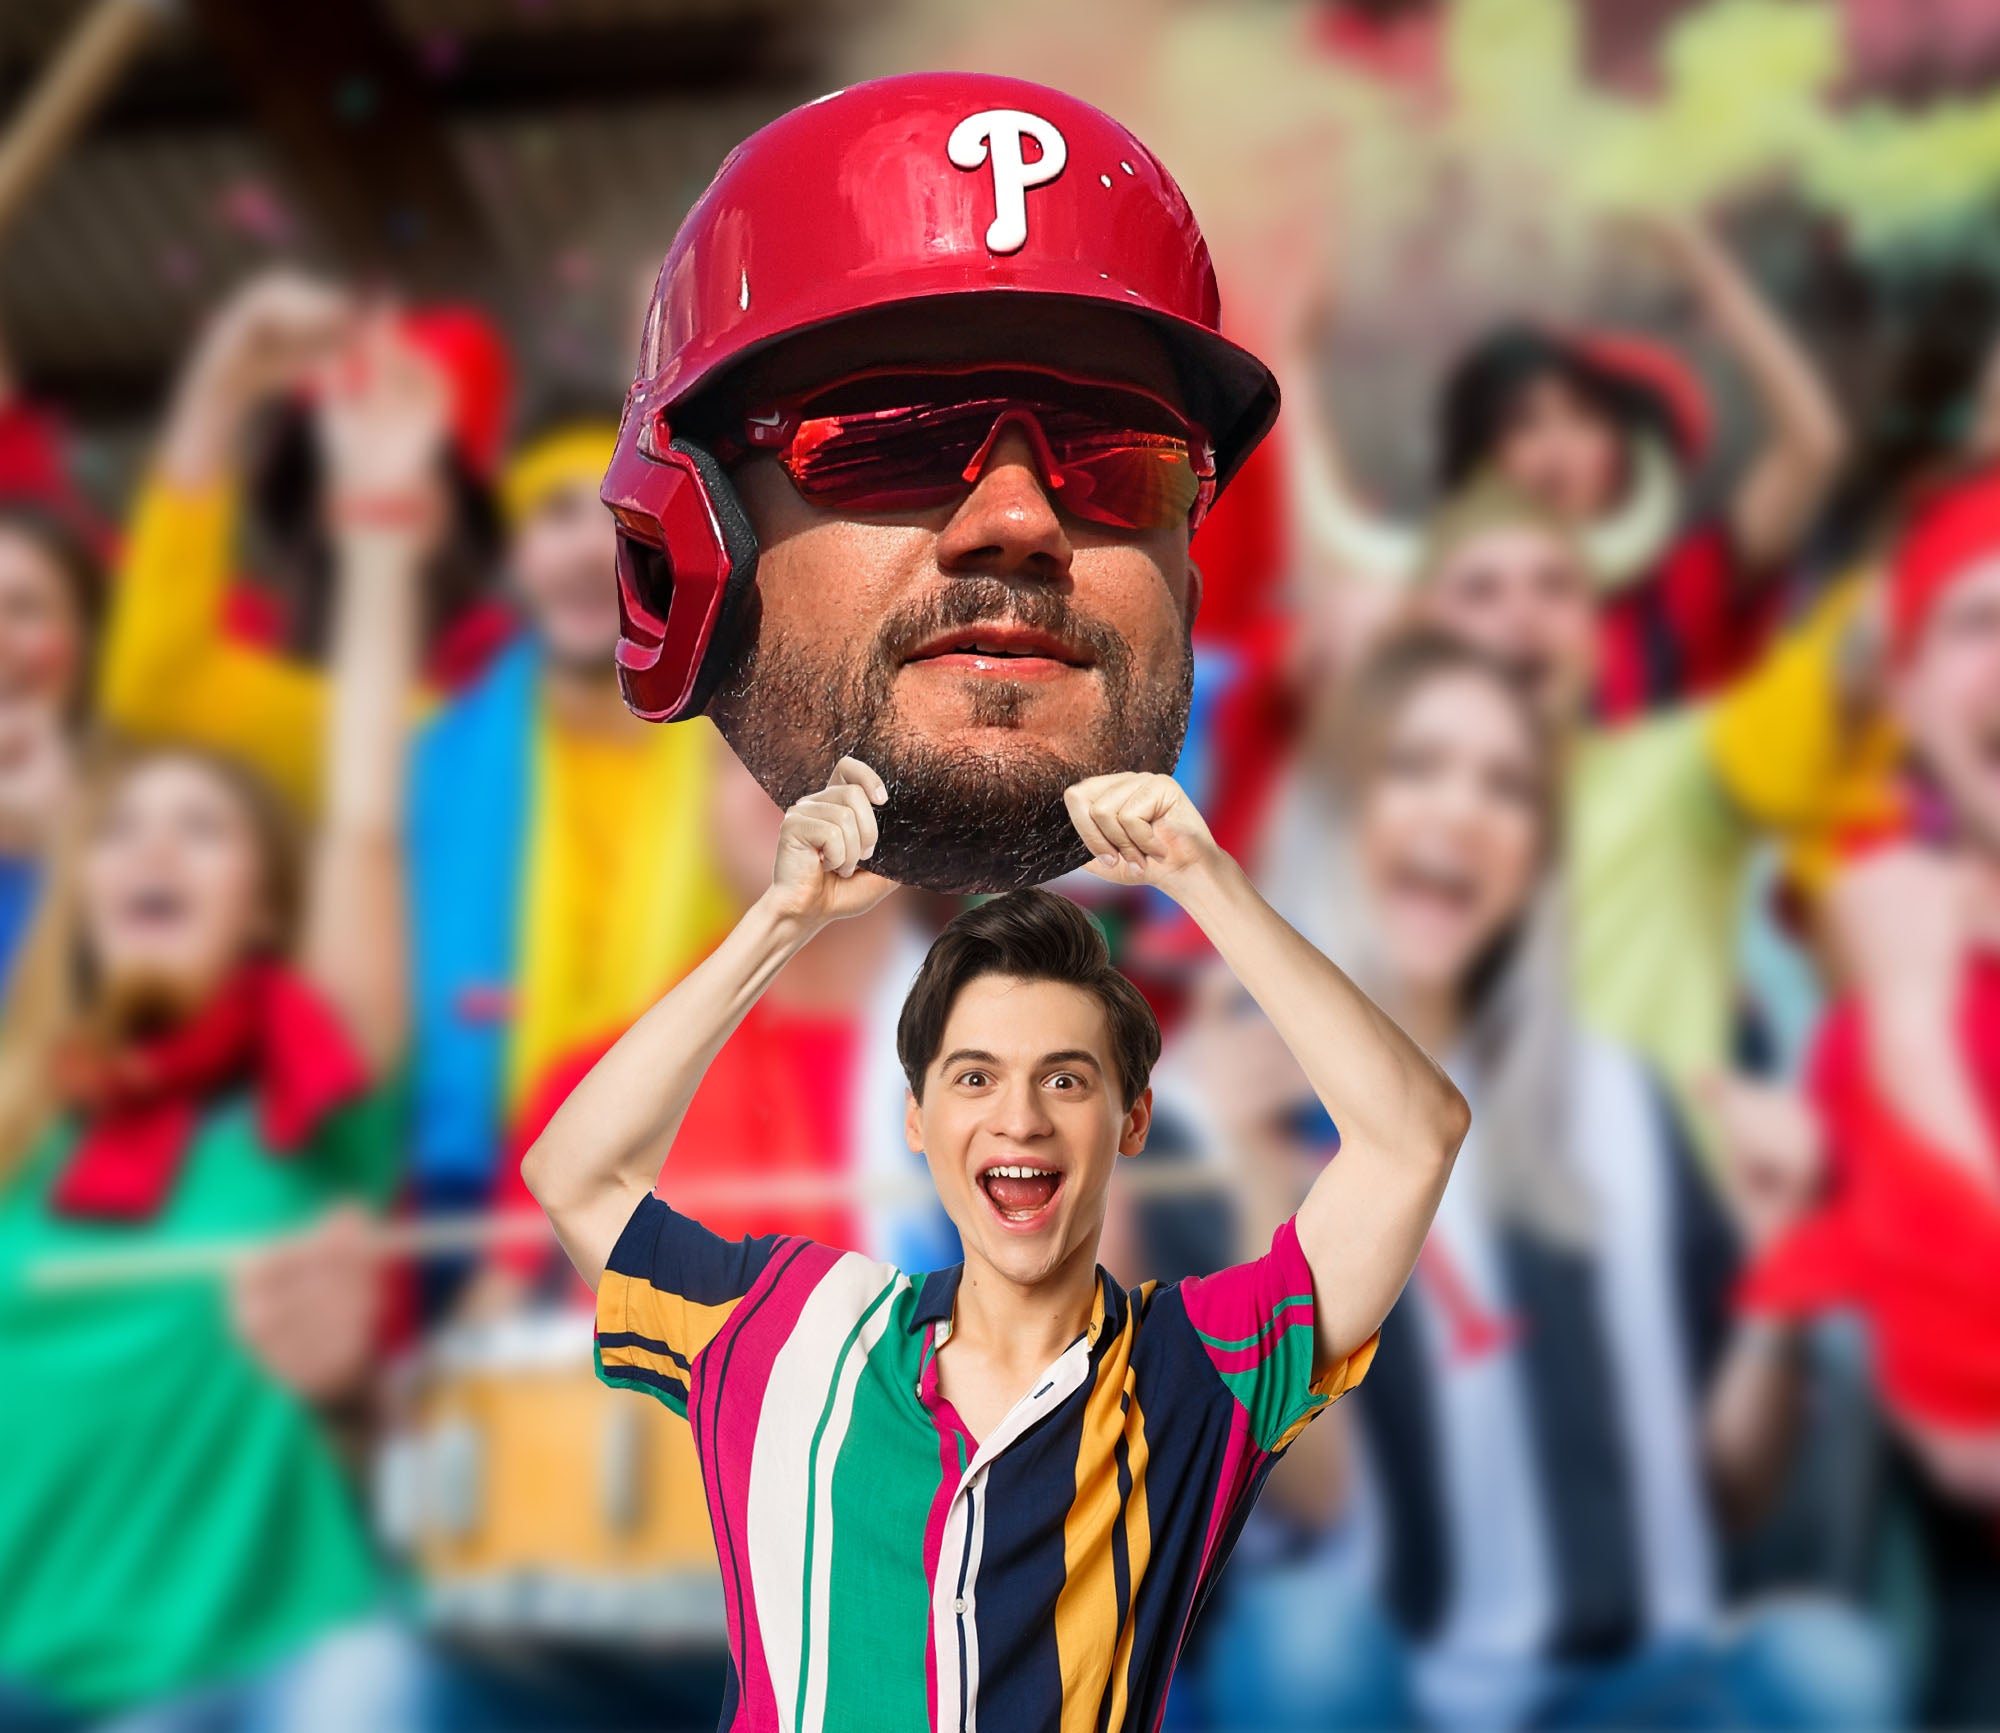 Kyle Schwarber Philadelphia Phillies In 2022 MLB World Series Home Decor  Poster Canvas - REVER LAVIE